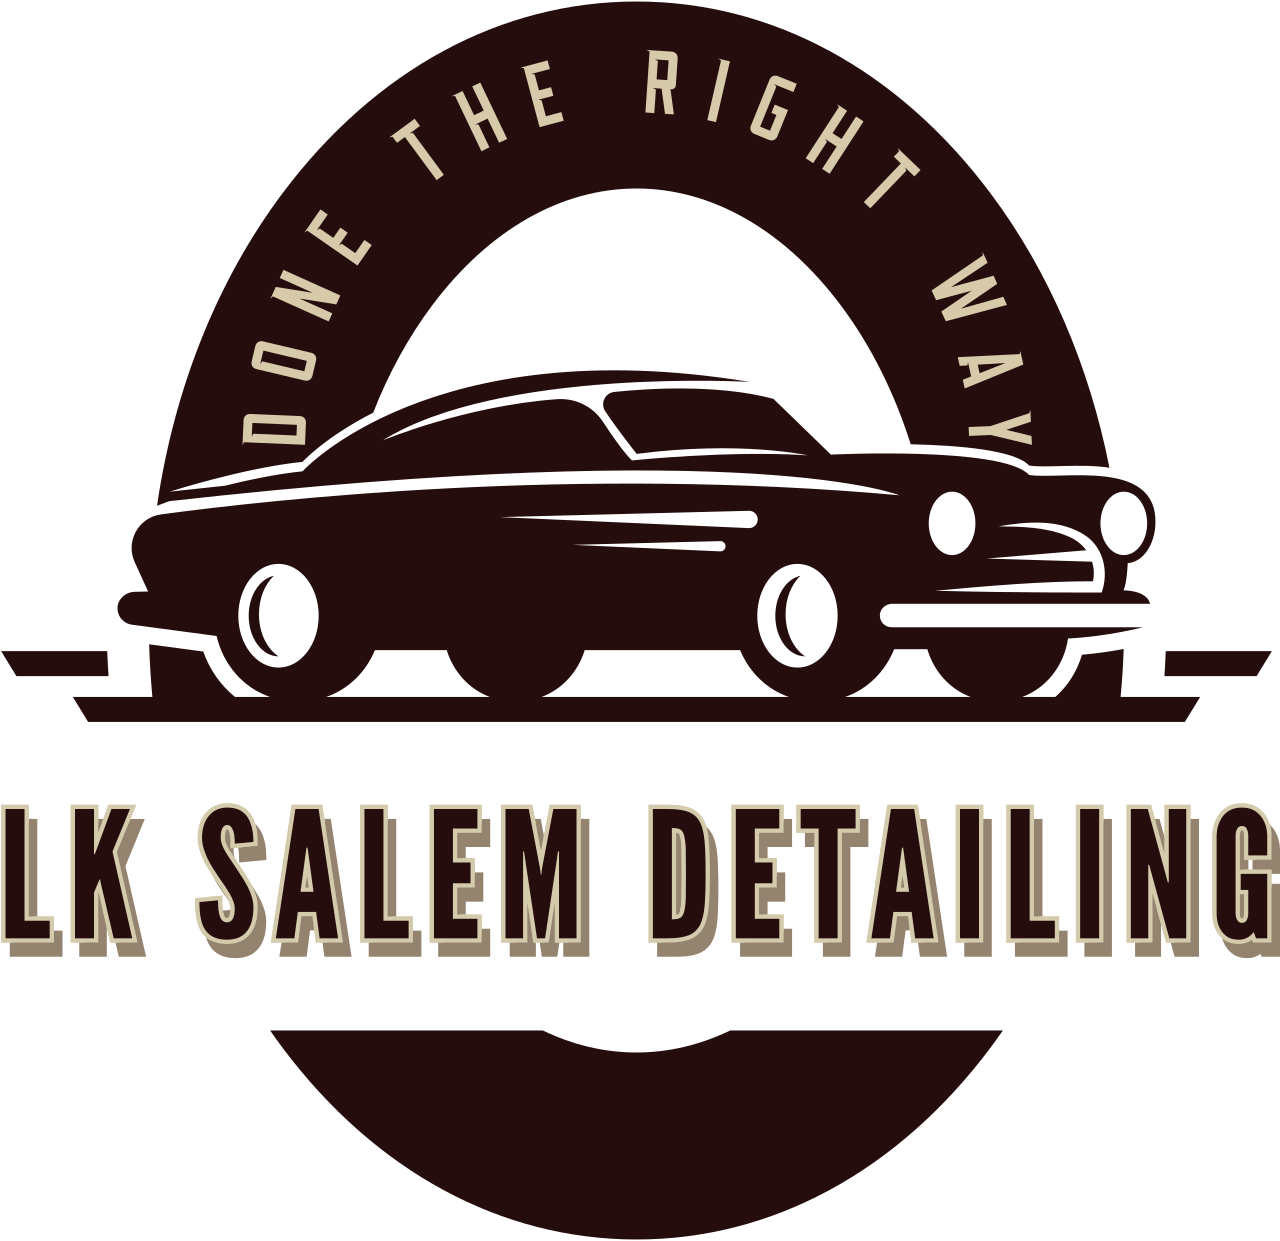 LK Salem Detailing's logo